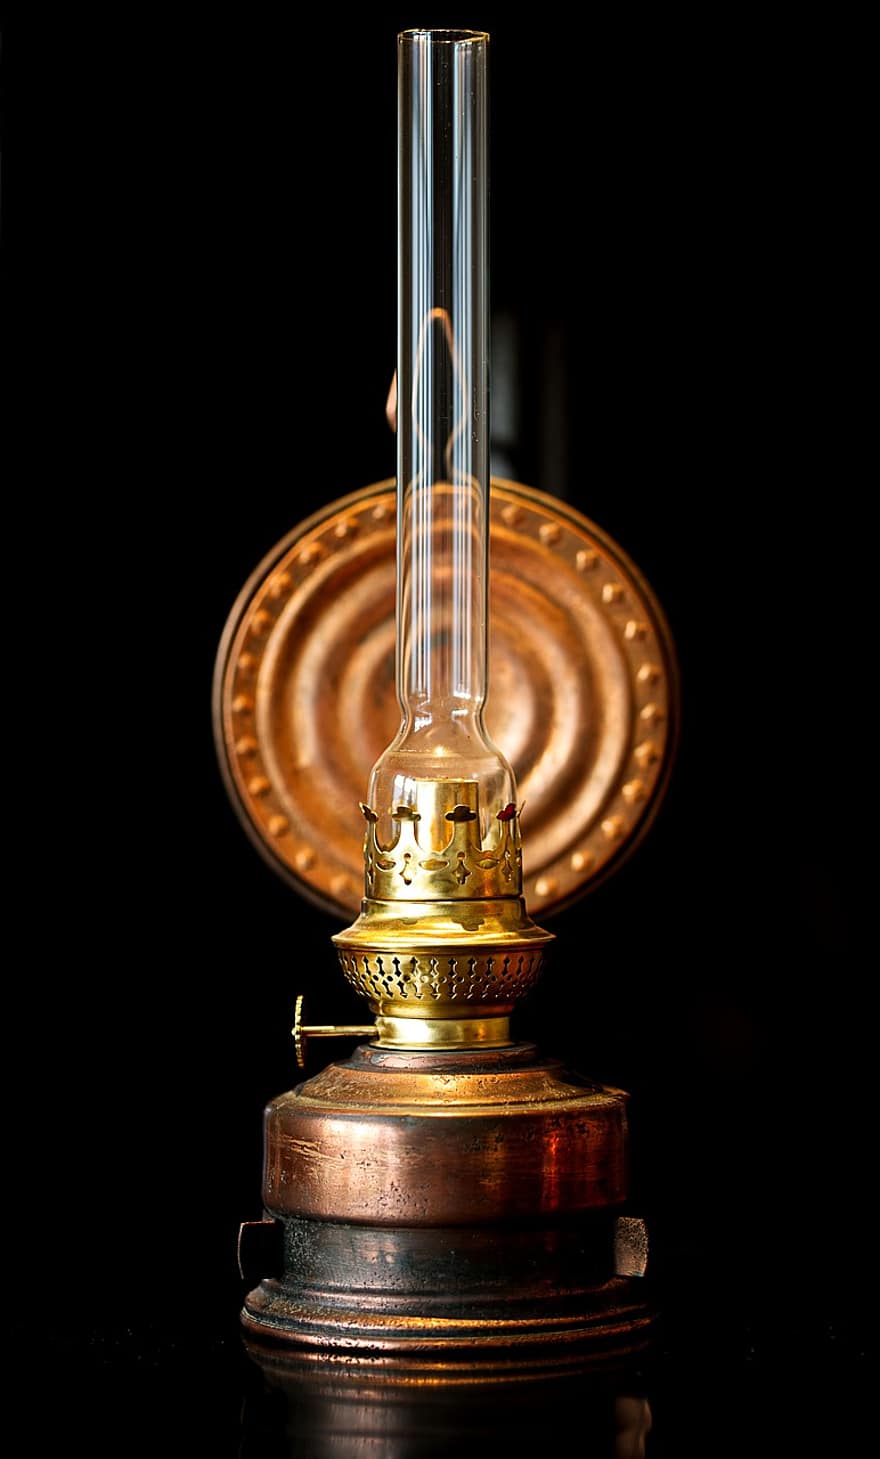 Měděná olejová lampa, makro, dekorace, vinobraní, jeden objekt, detail, zařízení, sklenka, antický, staromódní, kapalný